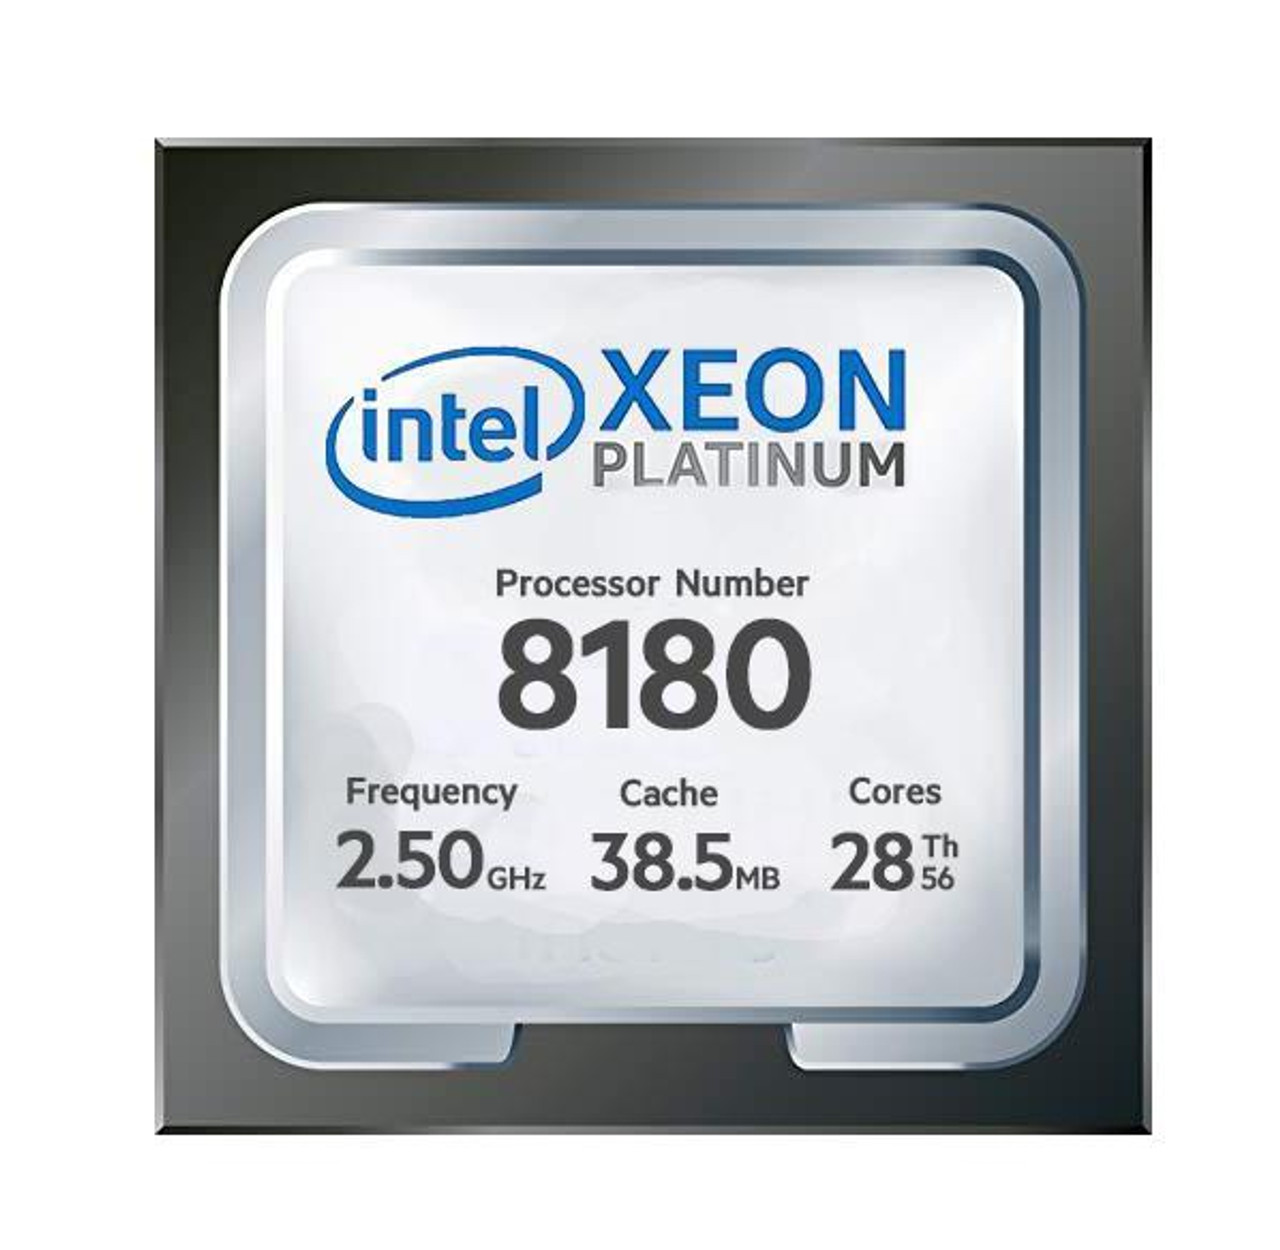 Cisco 2.50GHz 10.4GT/s UPI 38.5MB L3 Cache Socket LGA3647 Intel Xeon Platinum 8180 28-Core Processor Upgrade